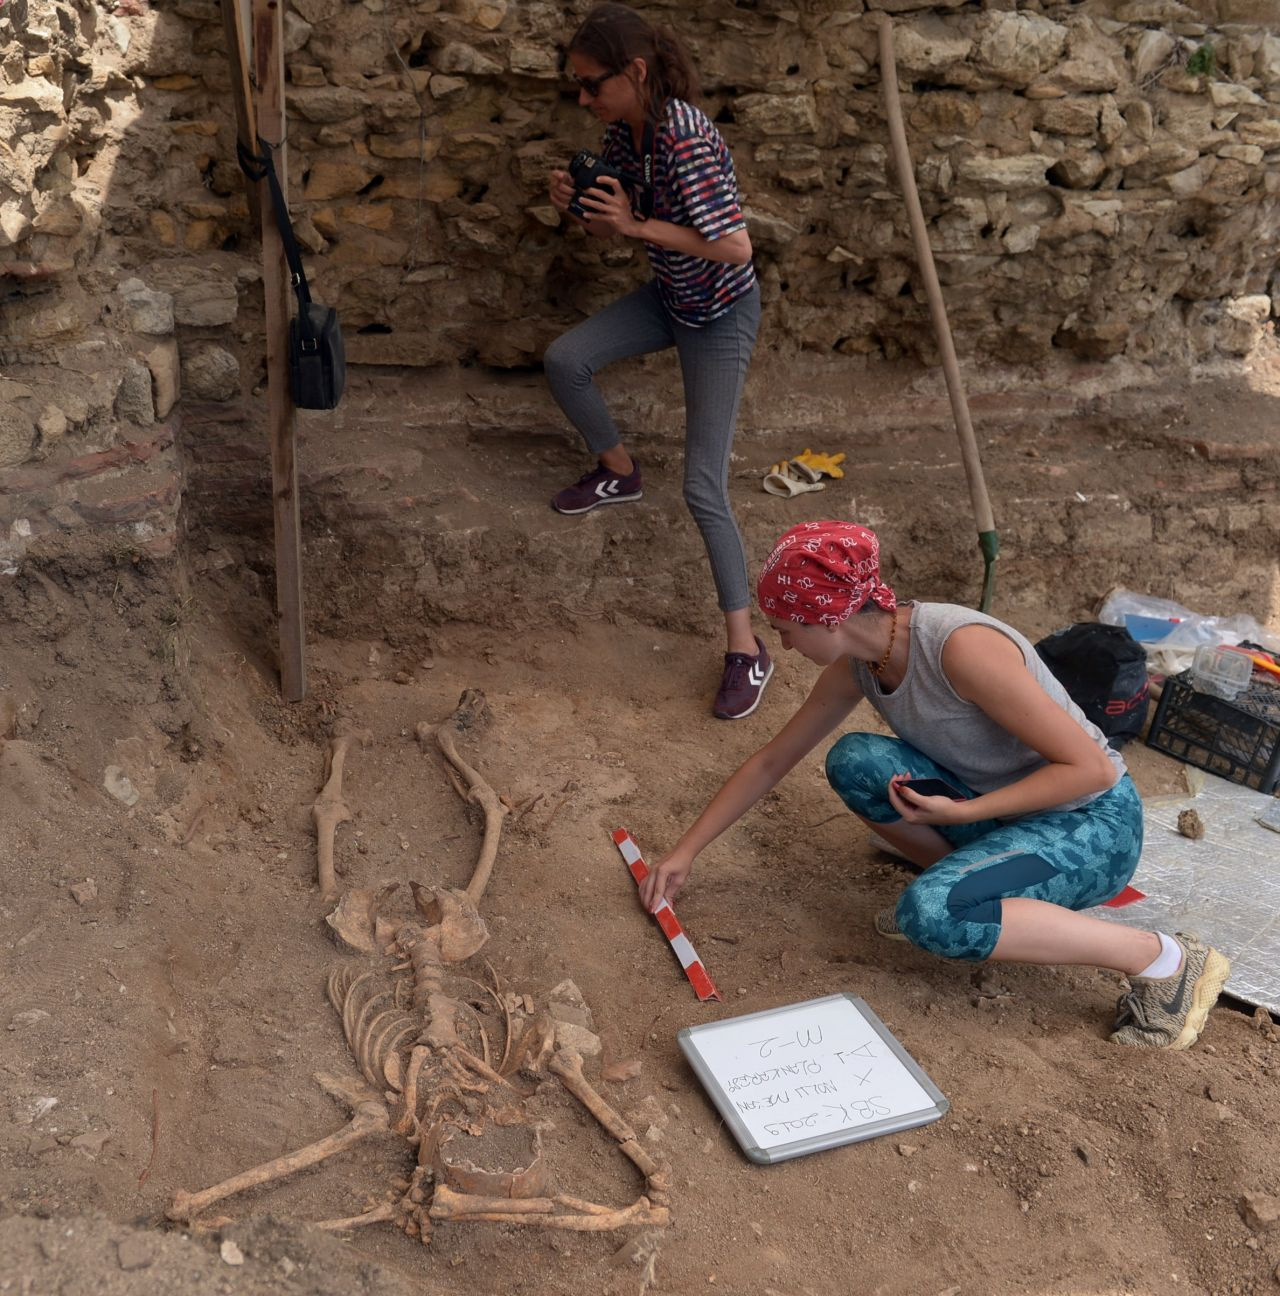 200 yıllık iskelet bulundu! Mezarındaki yatış pozisyonu görenleri şaşırttı